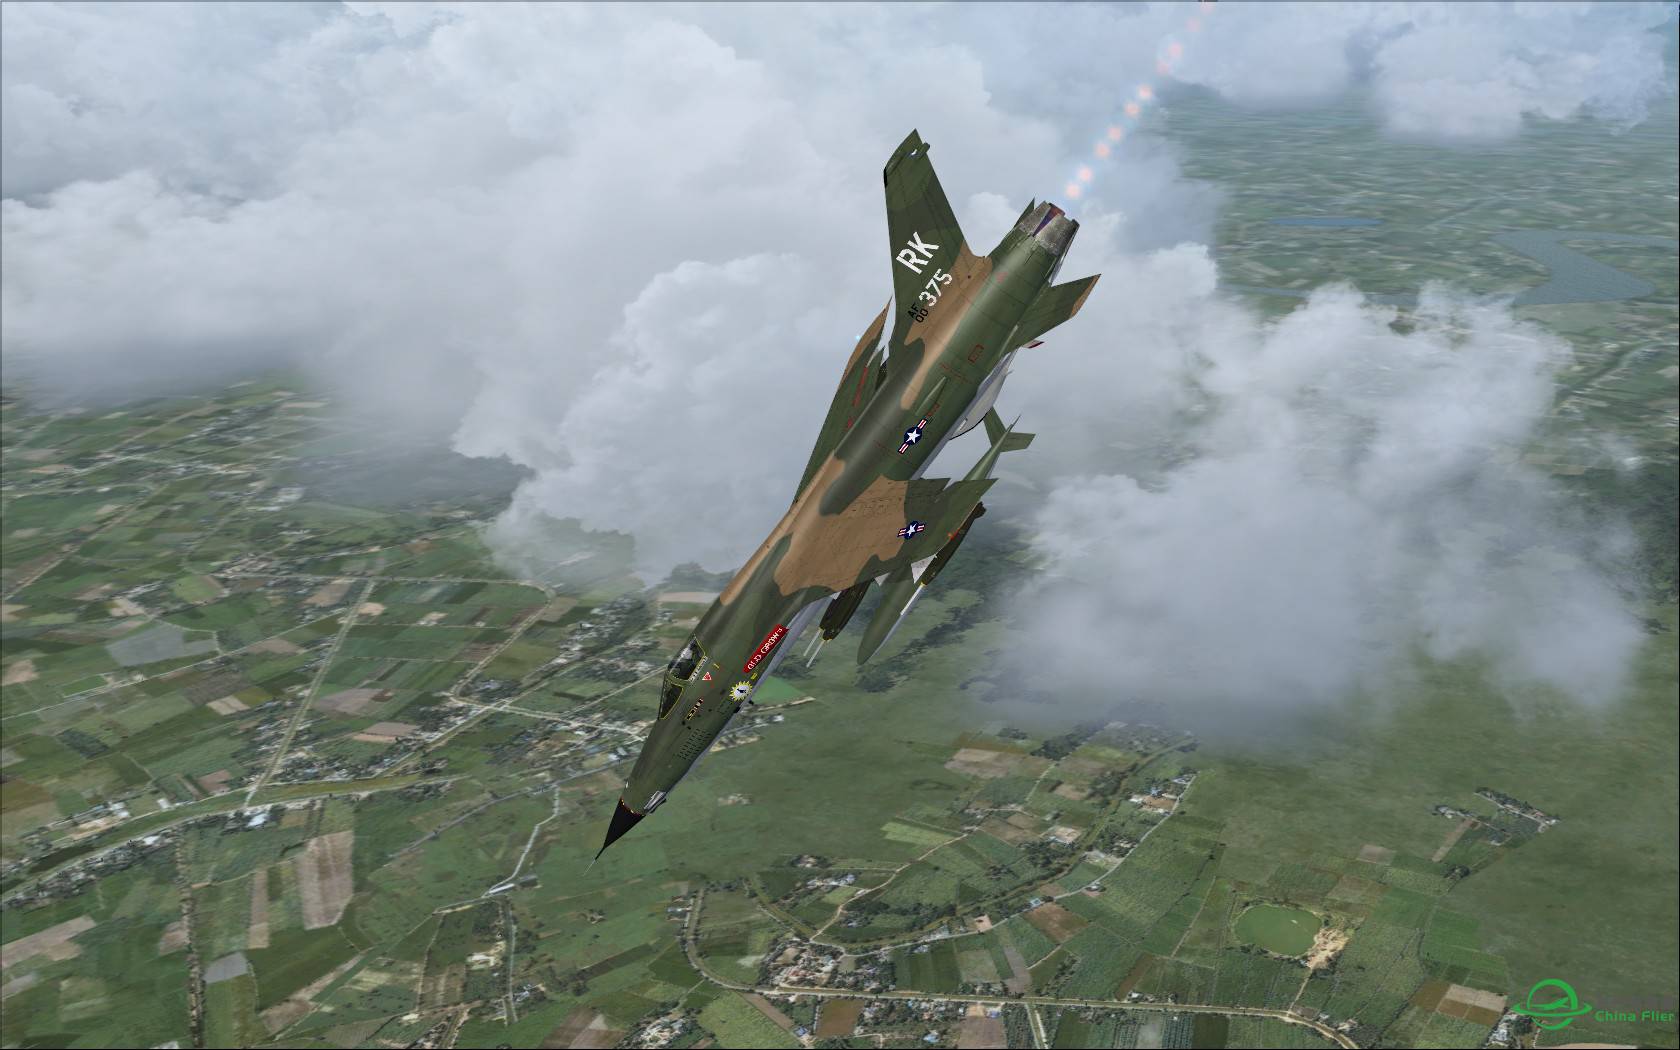 故地重游:越南内排机场起飞的F-105雷公战斗轰炸机-3194 